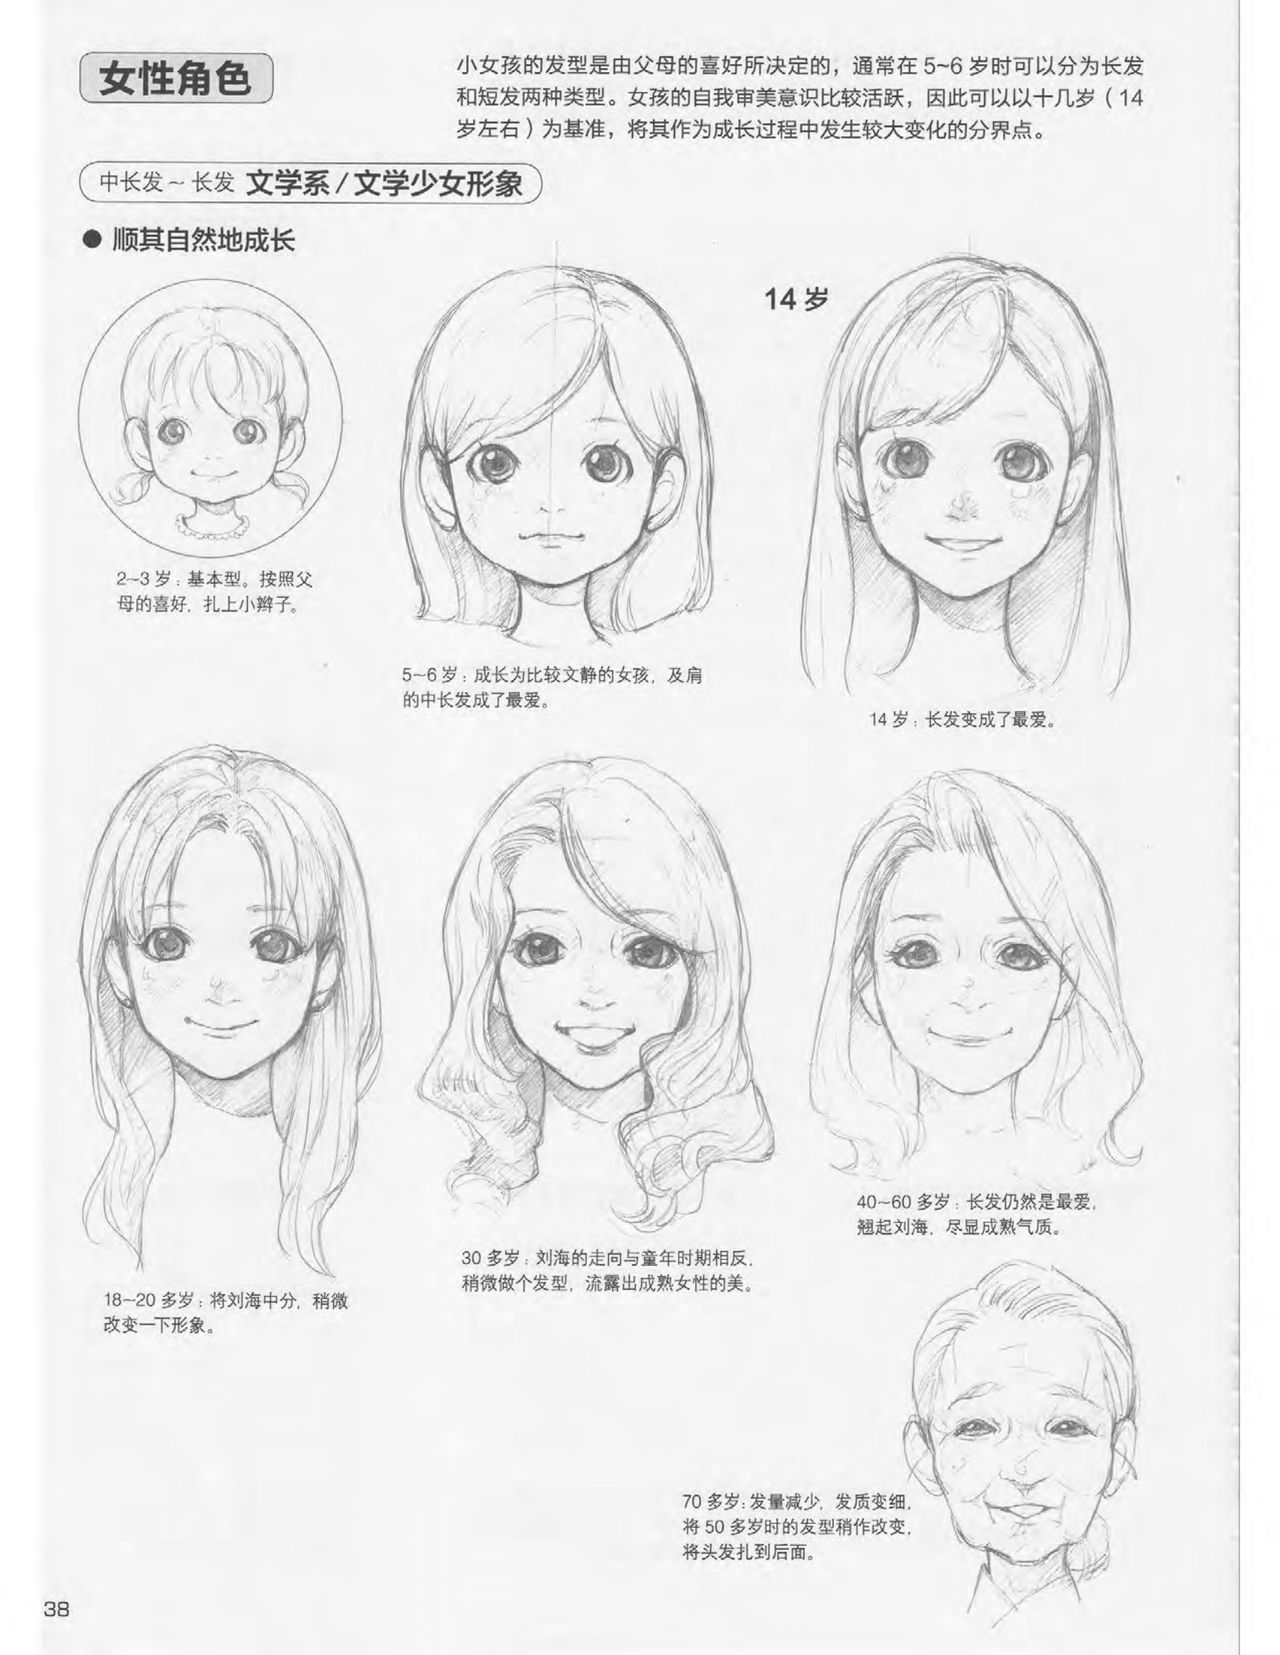 Japanese Manga Master Lecture 3: Lin Akira and Kakumaru Maru Talk About Glamorous Character Modeling 38